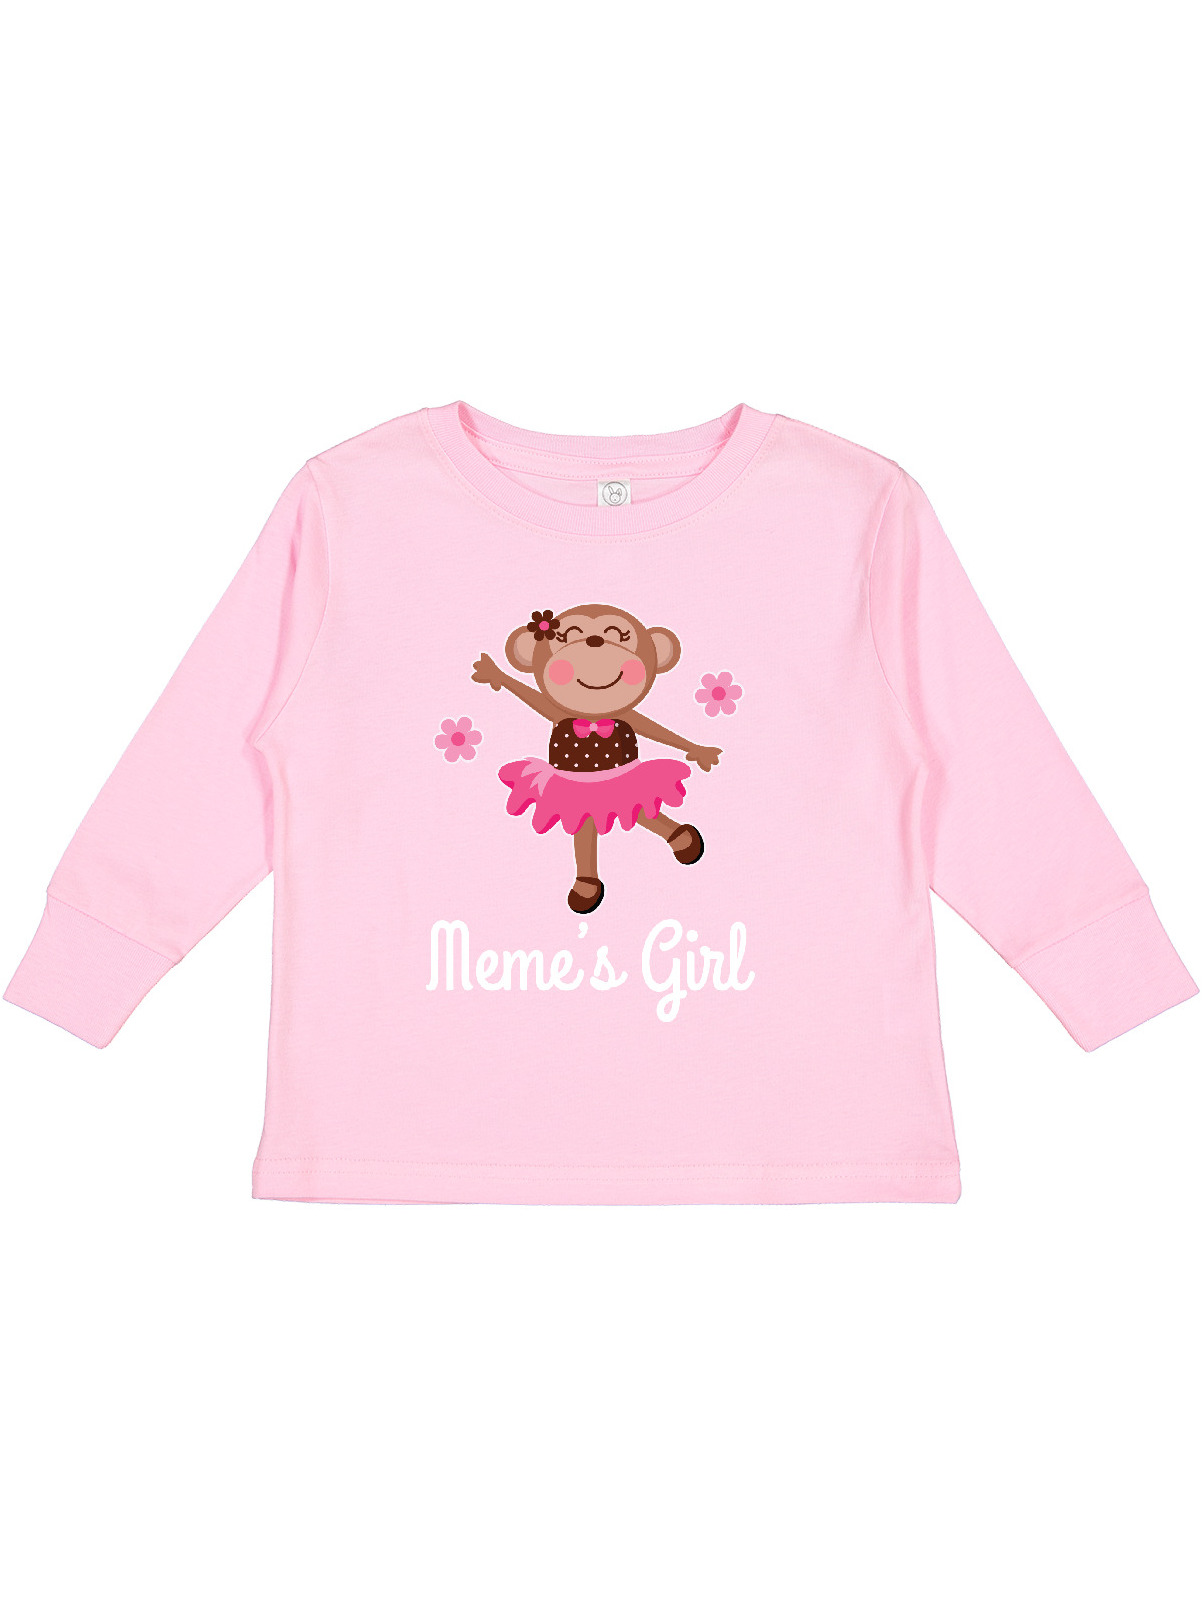 Inktastic Meme Girl Ballerina Monkey Girls Long Sleeve Toddler T-Shirt - image 1 of 4